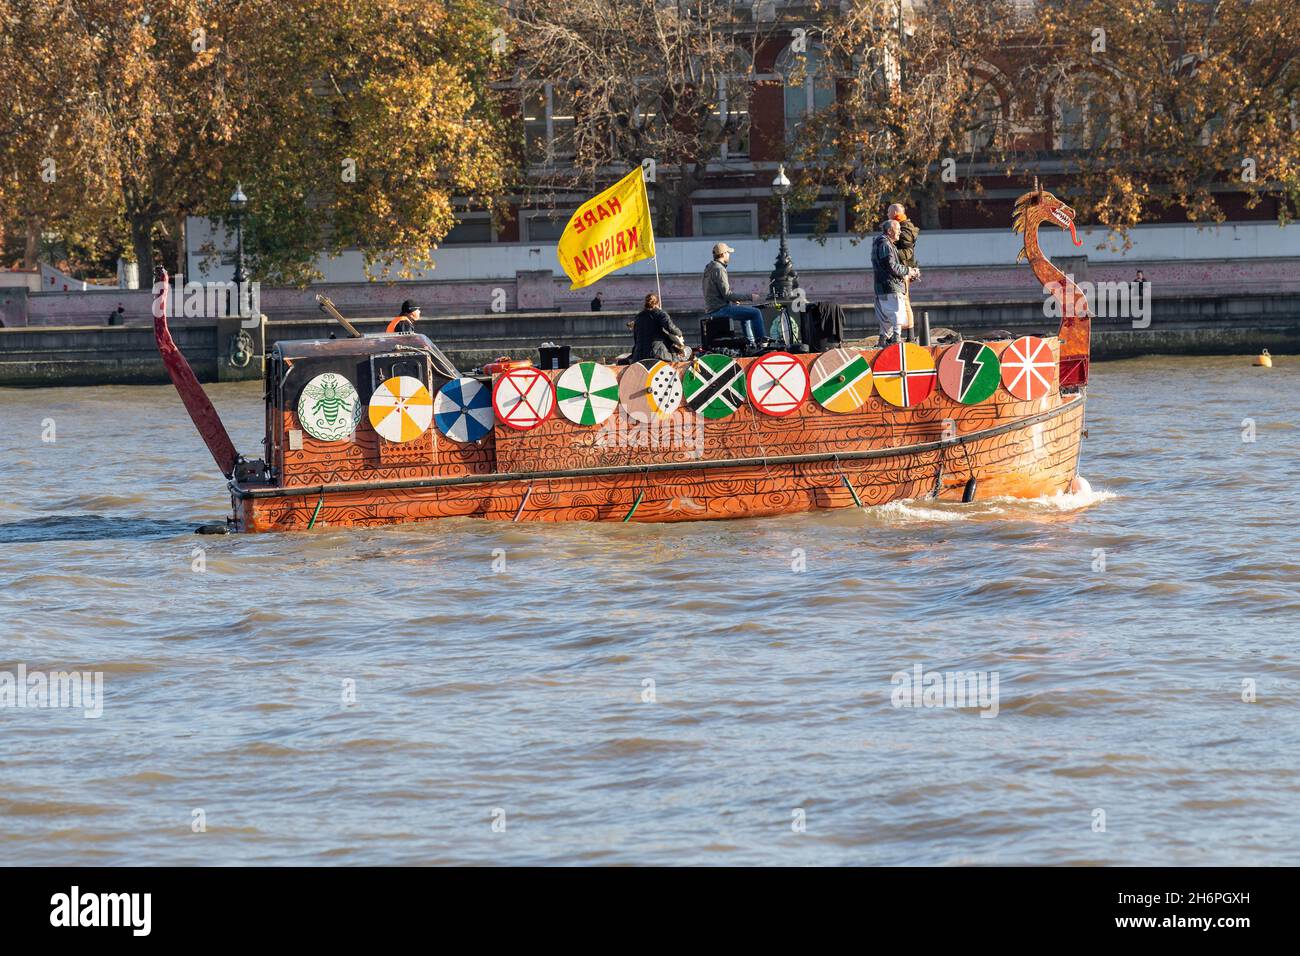 Londres, Royaume-Uni.17 novembre 2021.Hare Krishna bateau sur la Tamise à Westminster London crédit: Ian Davidson/Alay Live News Banque D'Images